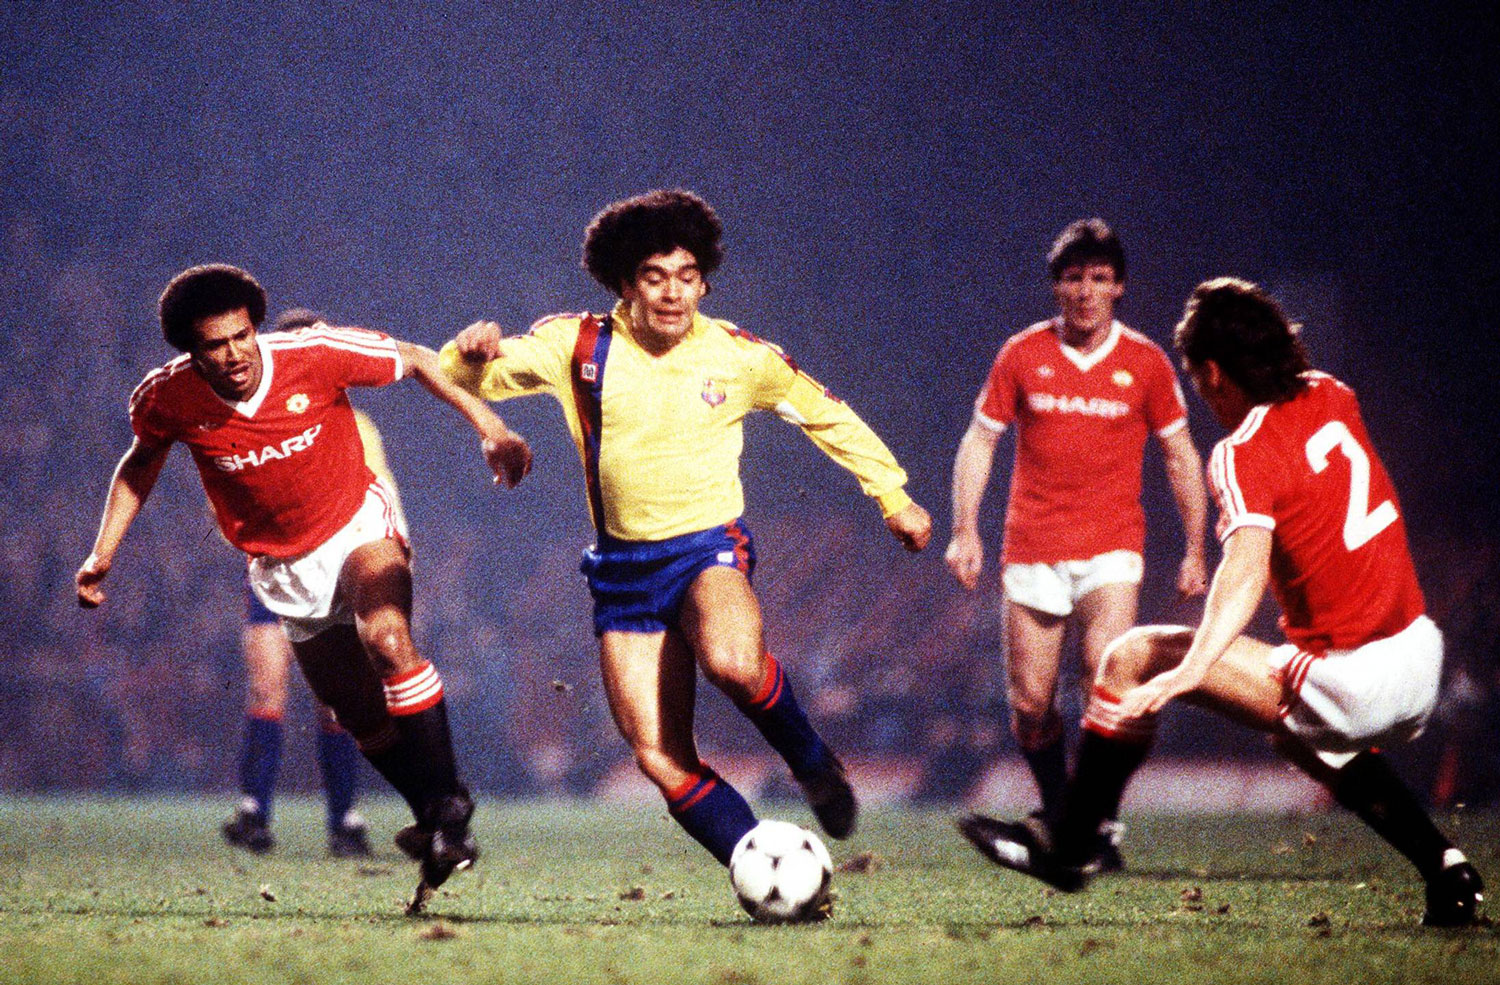 Maradona jugando para el Barcelona, gambeteando a Remi Mark Moses (izq.) y Mike Duxbury del Manchester United en el partido que perdería por 3 a 0 contra el Manchester United el 21 de marzo de 1984 por la Copa de Europa. Maradona nunca se pudo asentar en el equipo culé que terminó prescindiendo de él. ©imago/Colorsport.